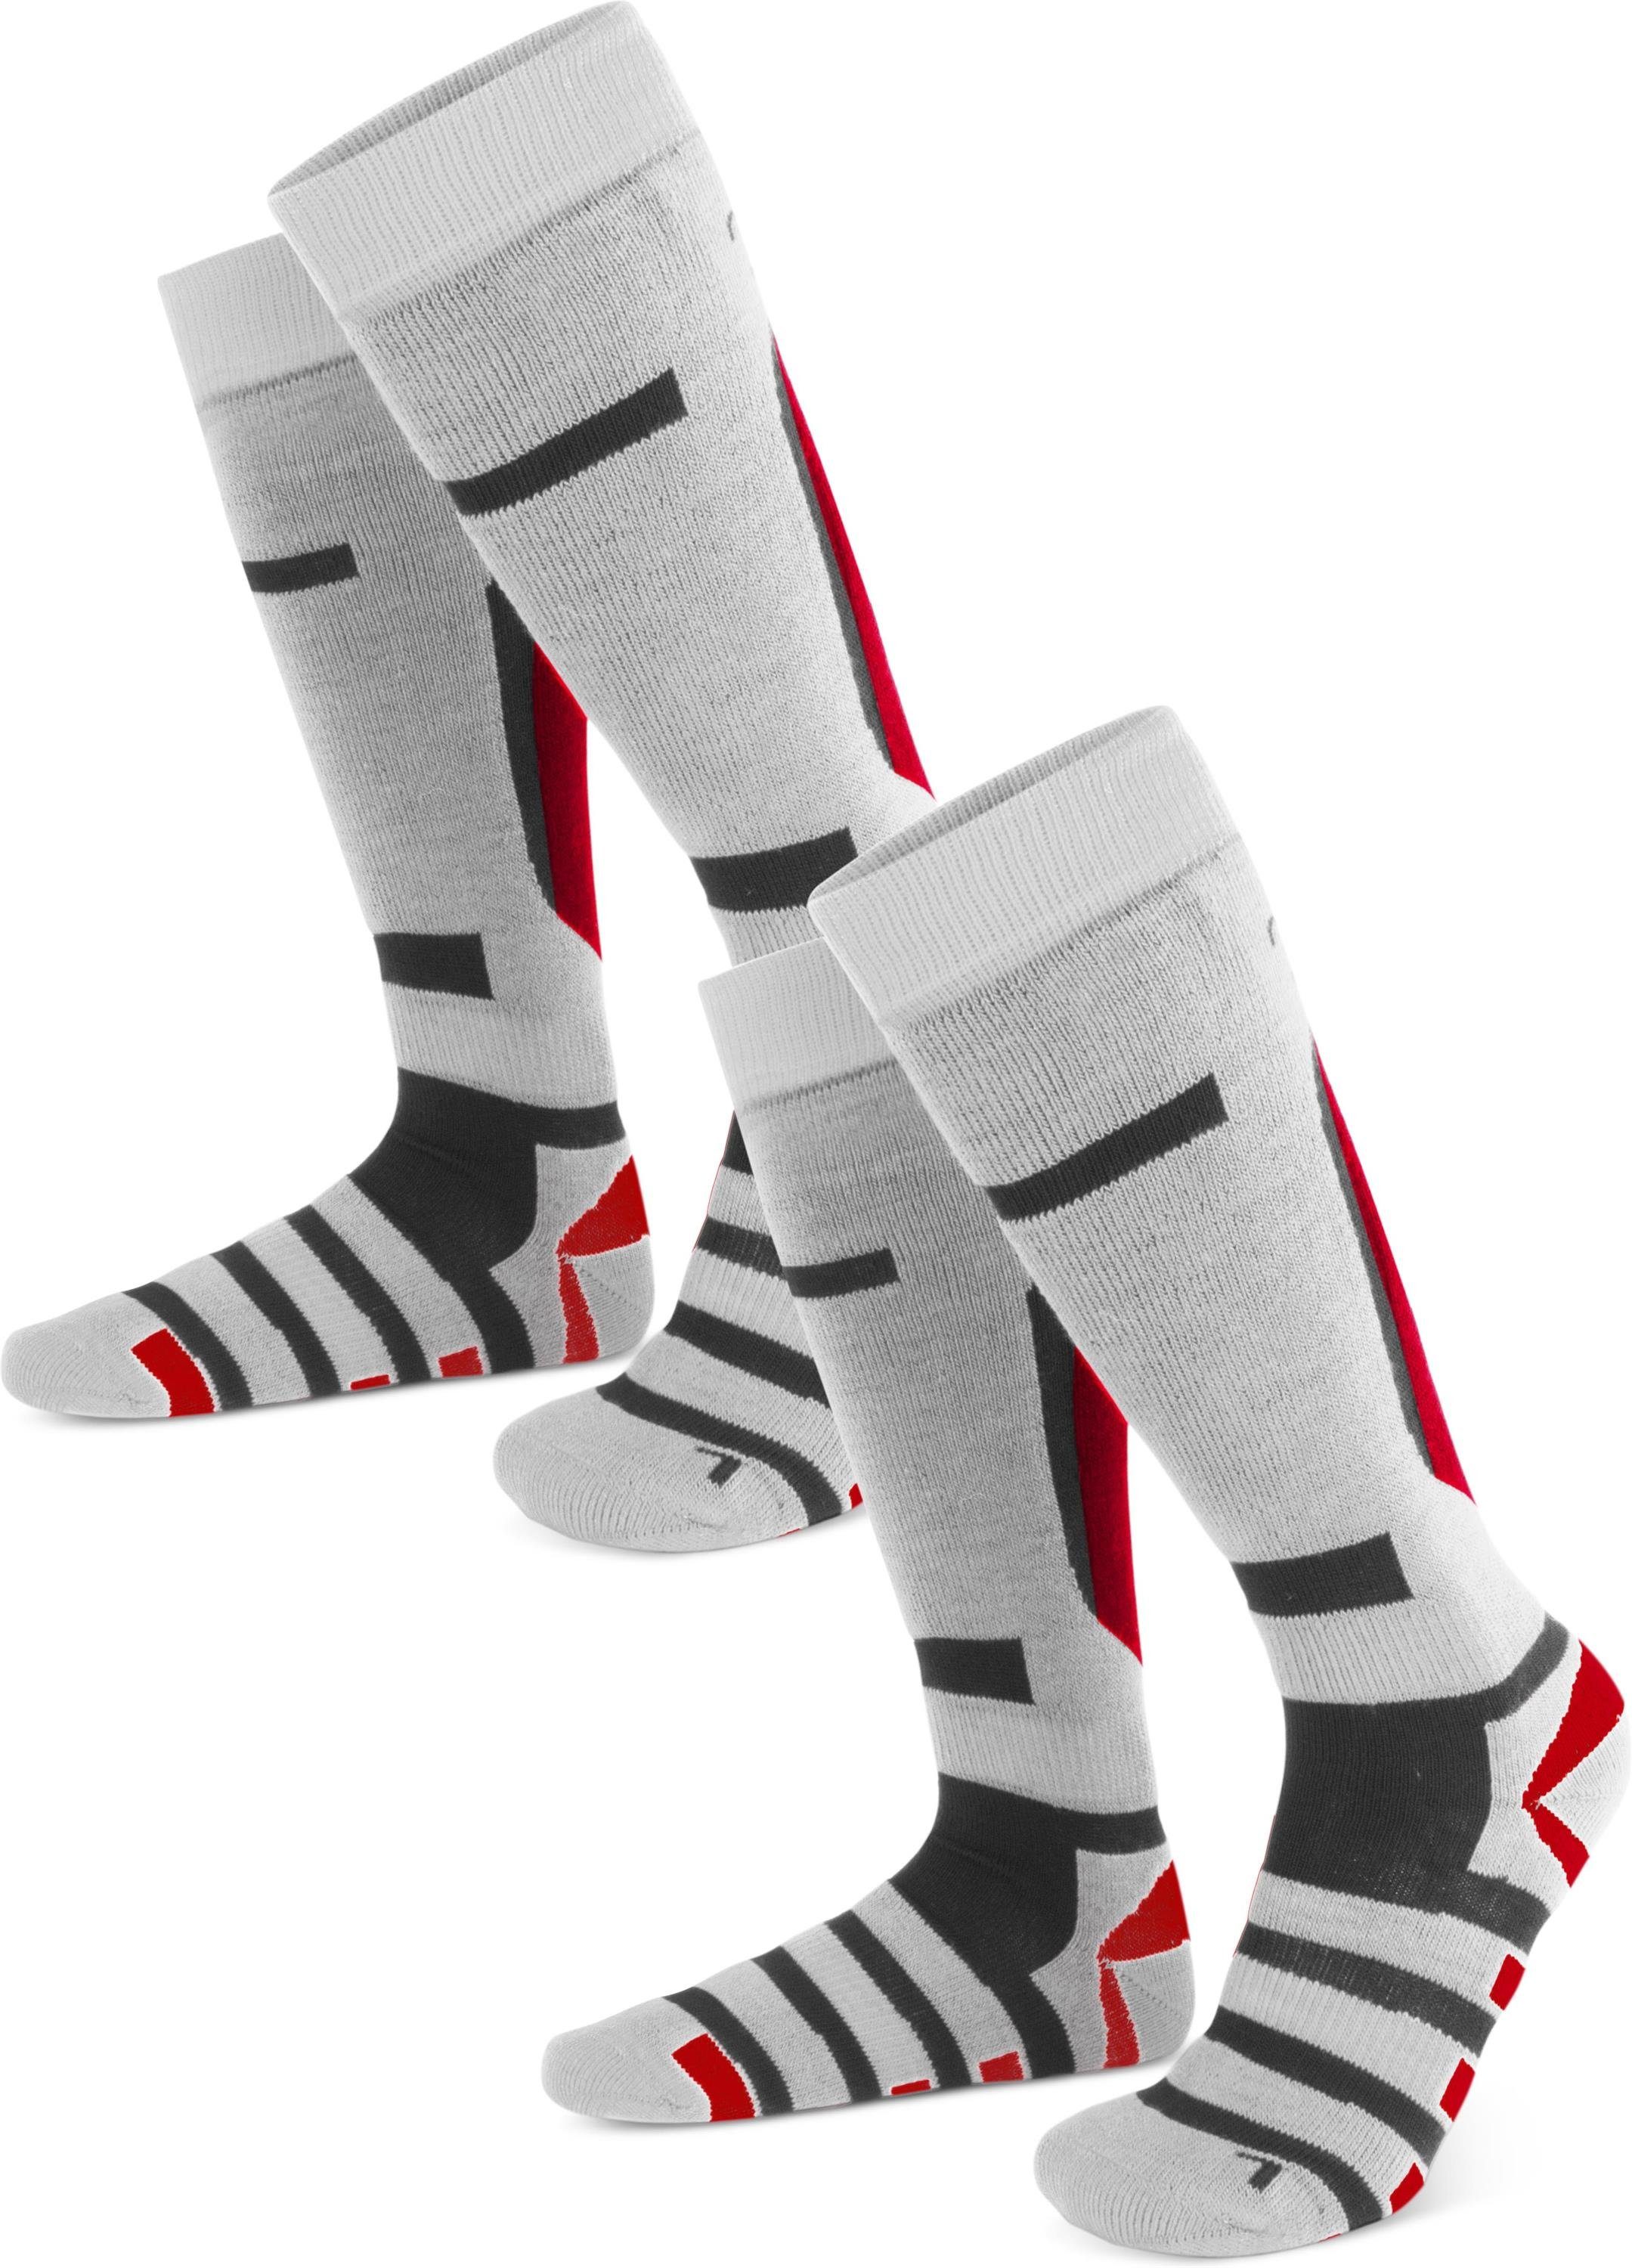 Weiß/Grau/Rot mit Paar Aufdruck „R“ Ski-Kniestrümpfe Ripp normani „L“ und 2 Skisocken Paar) (Set, 2